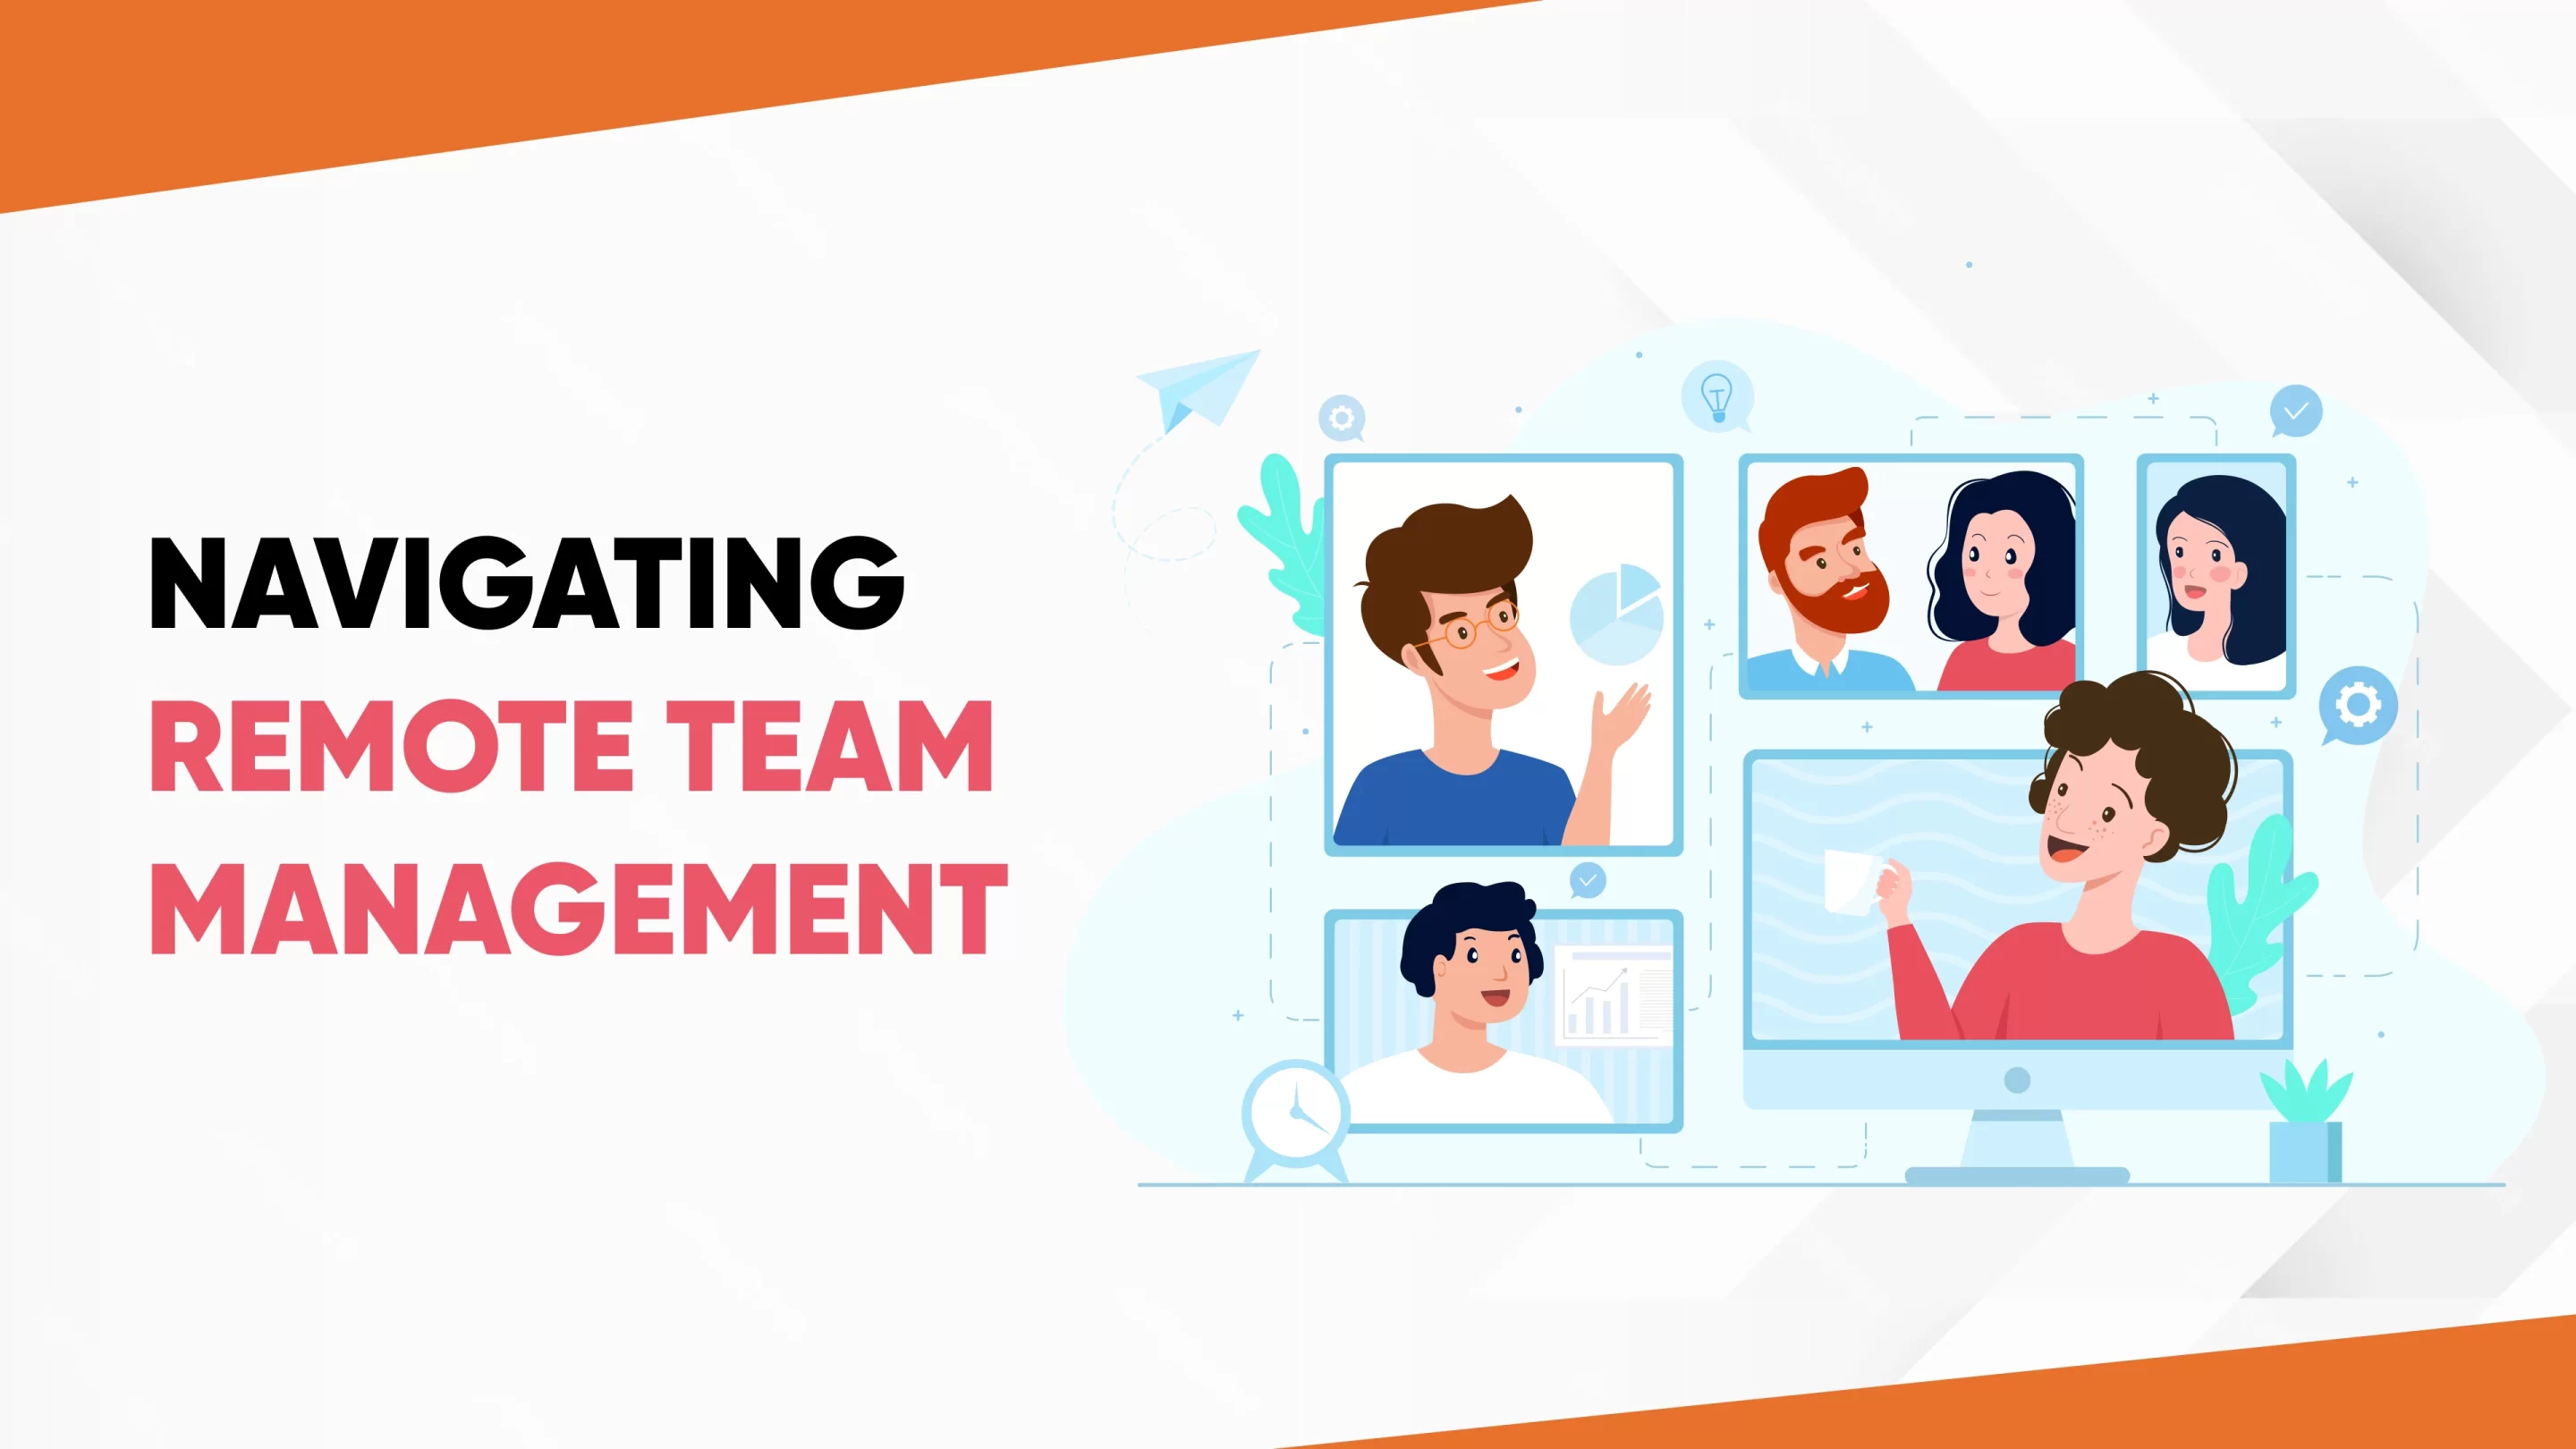 Remote Team Management